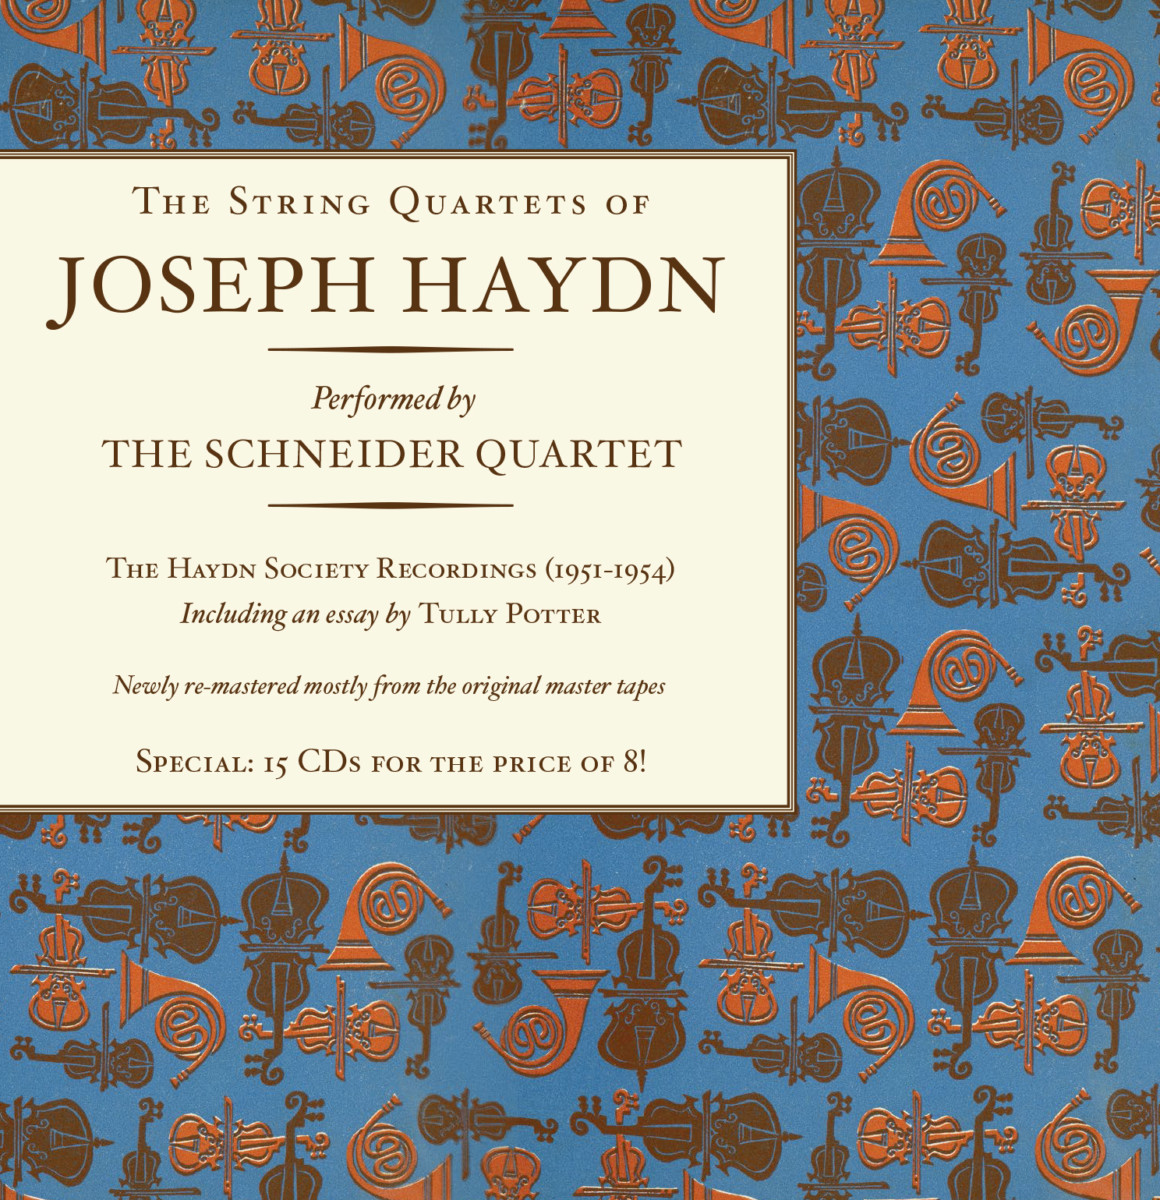 THE STRING QUARTETS OF JOSEPH HAYDN - The Schneider Quartet 